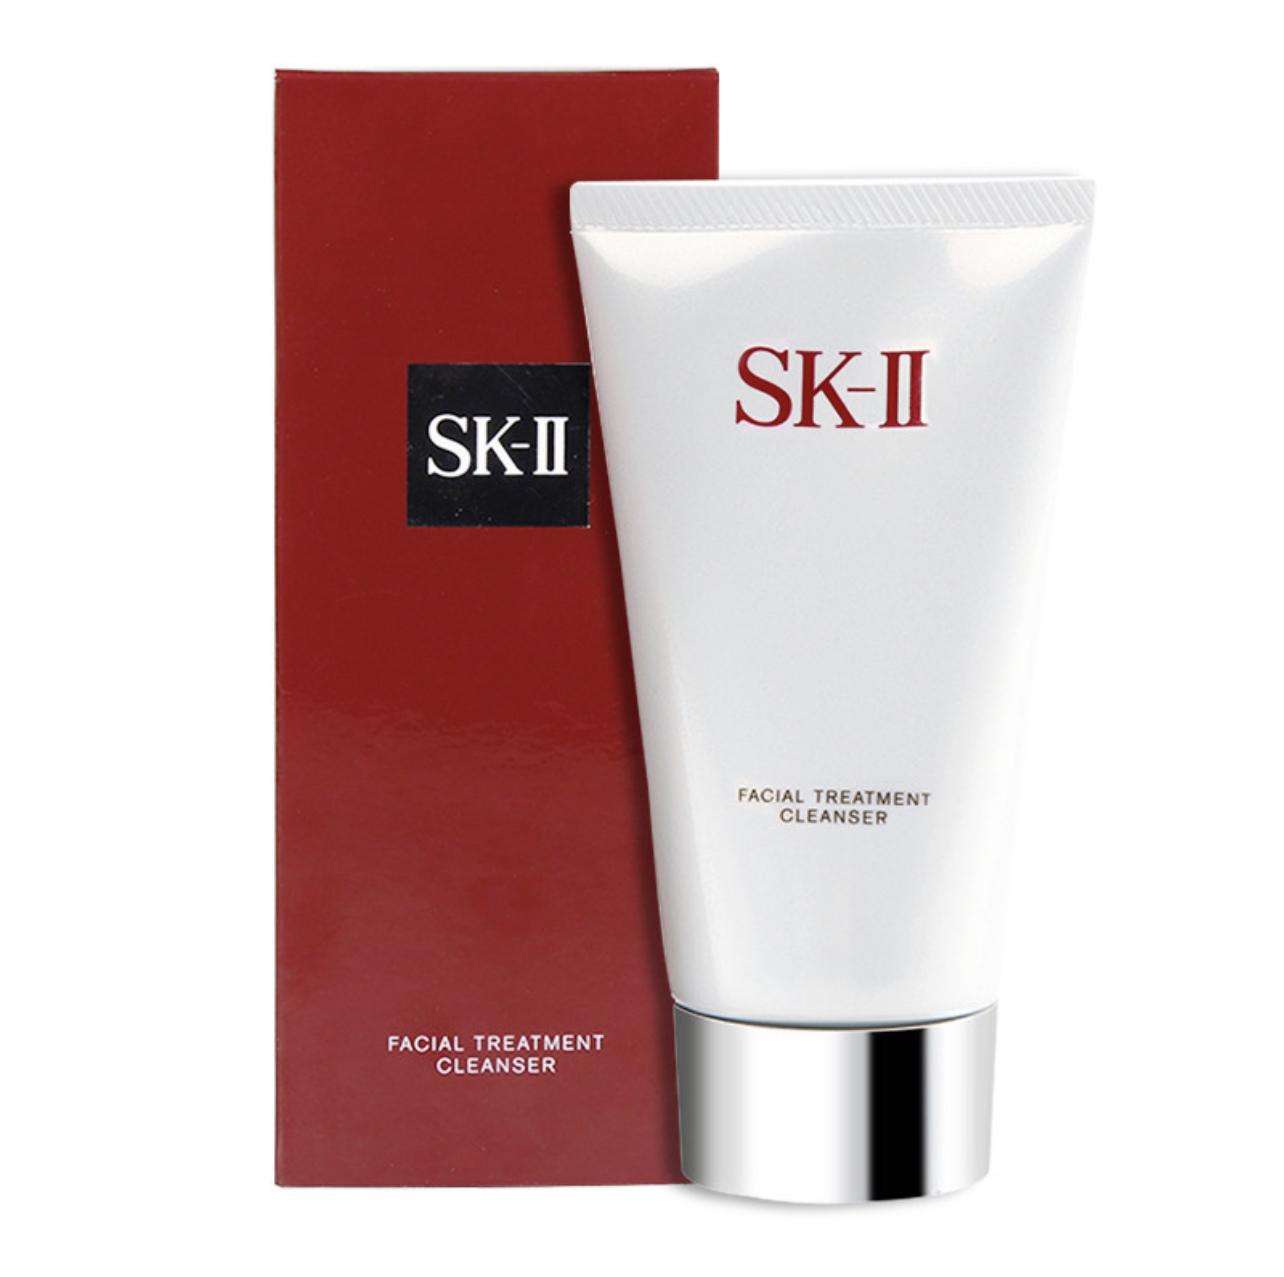 SK-II | 【SAvenue】SK-II保湿氨基酸洁面乳洗面奶120g/支（预售，30天后发货）商品图片,4.4折, 包邮包税